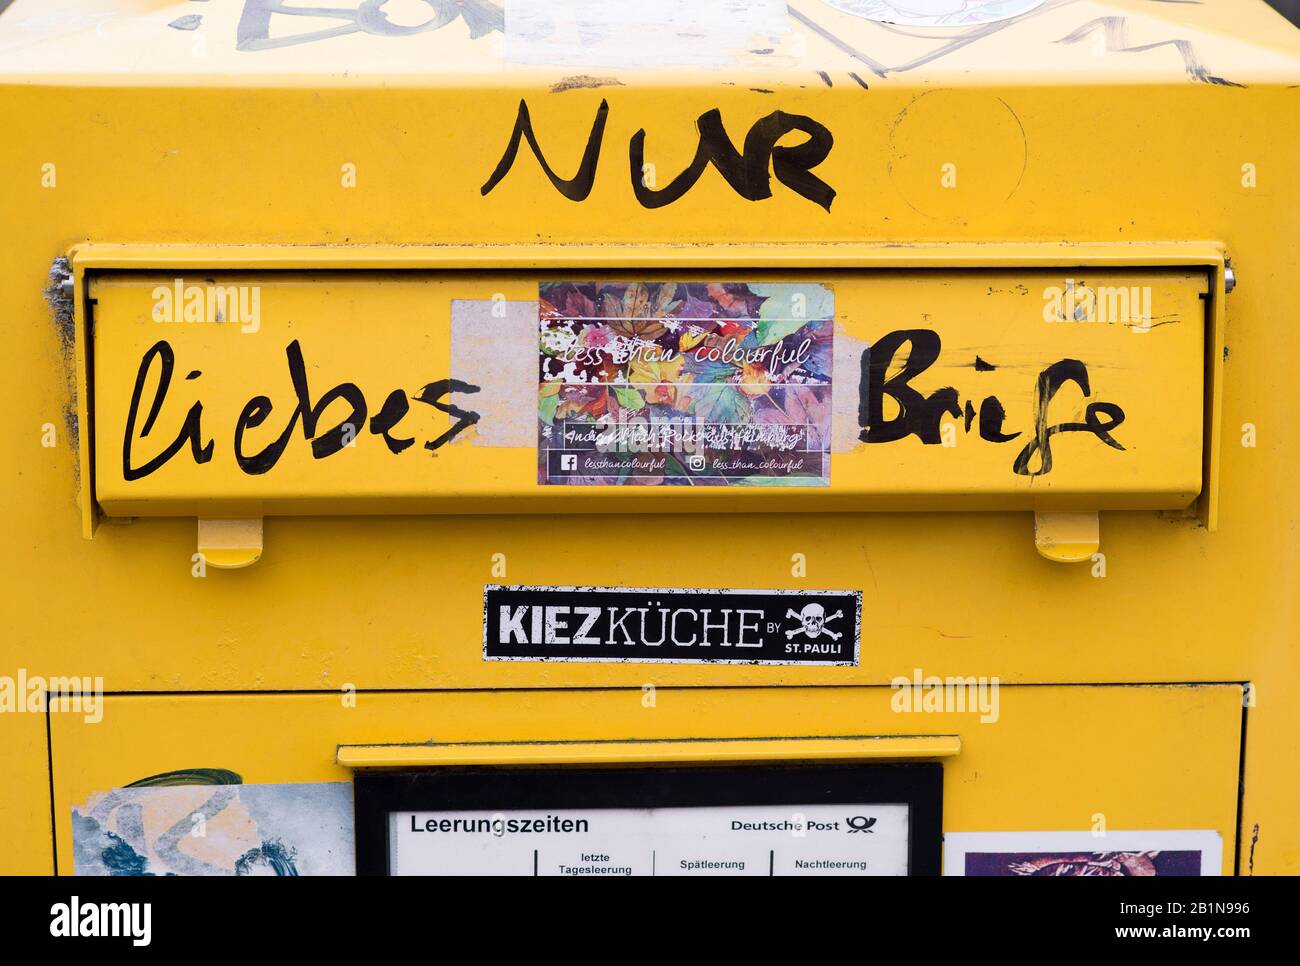 Briefkastenschrift "nur Liebesbriefe", Deutschland, Hamburg Stockfotografie  - Alamy